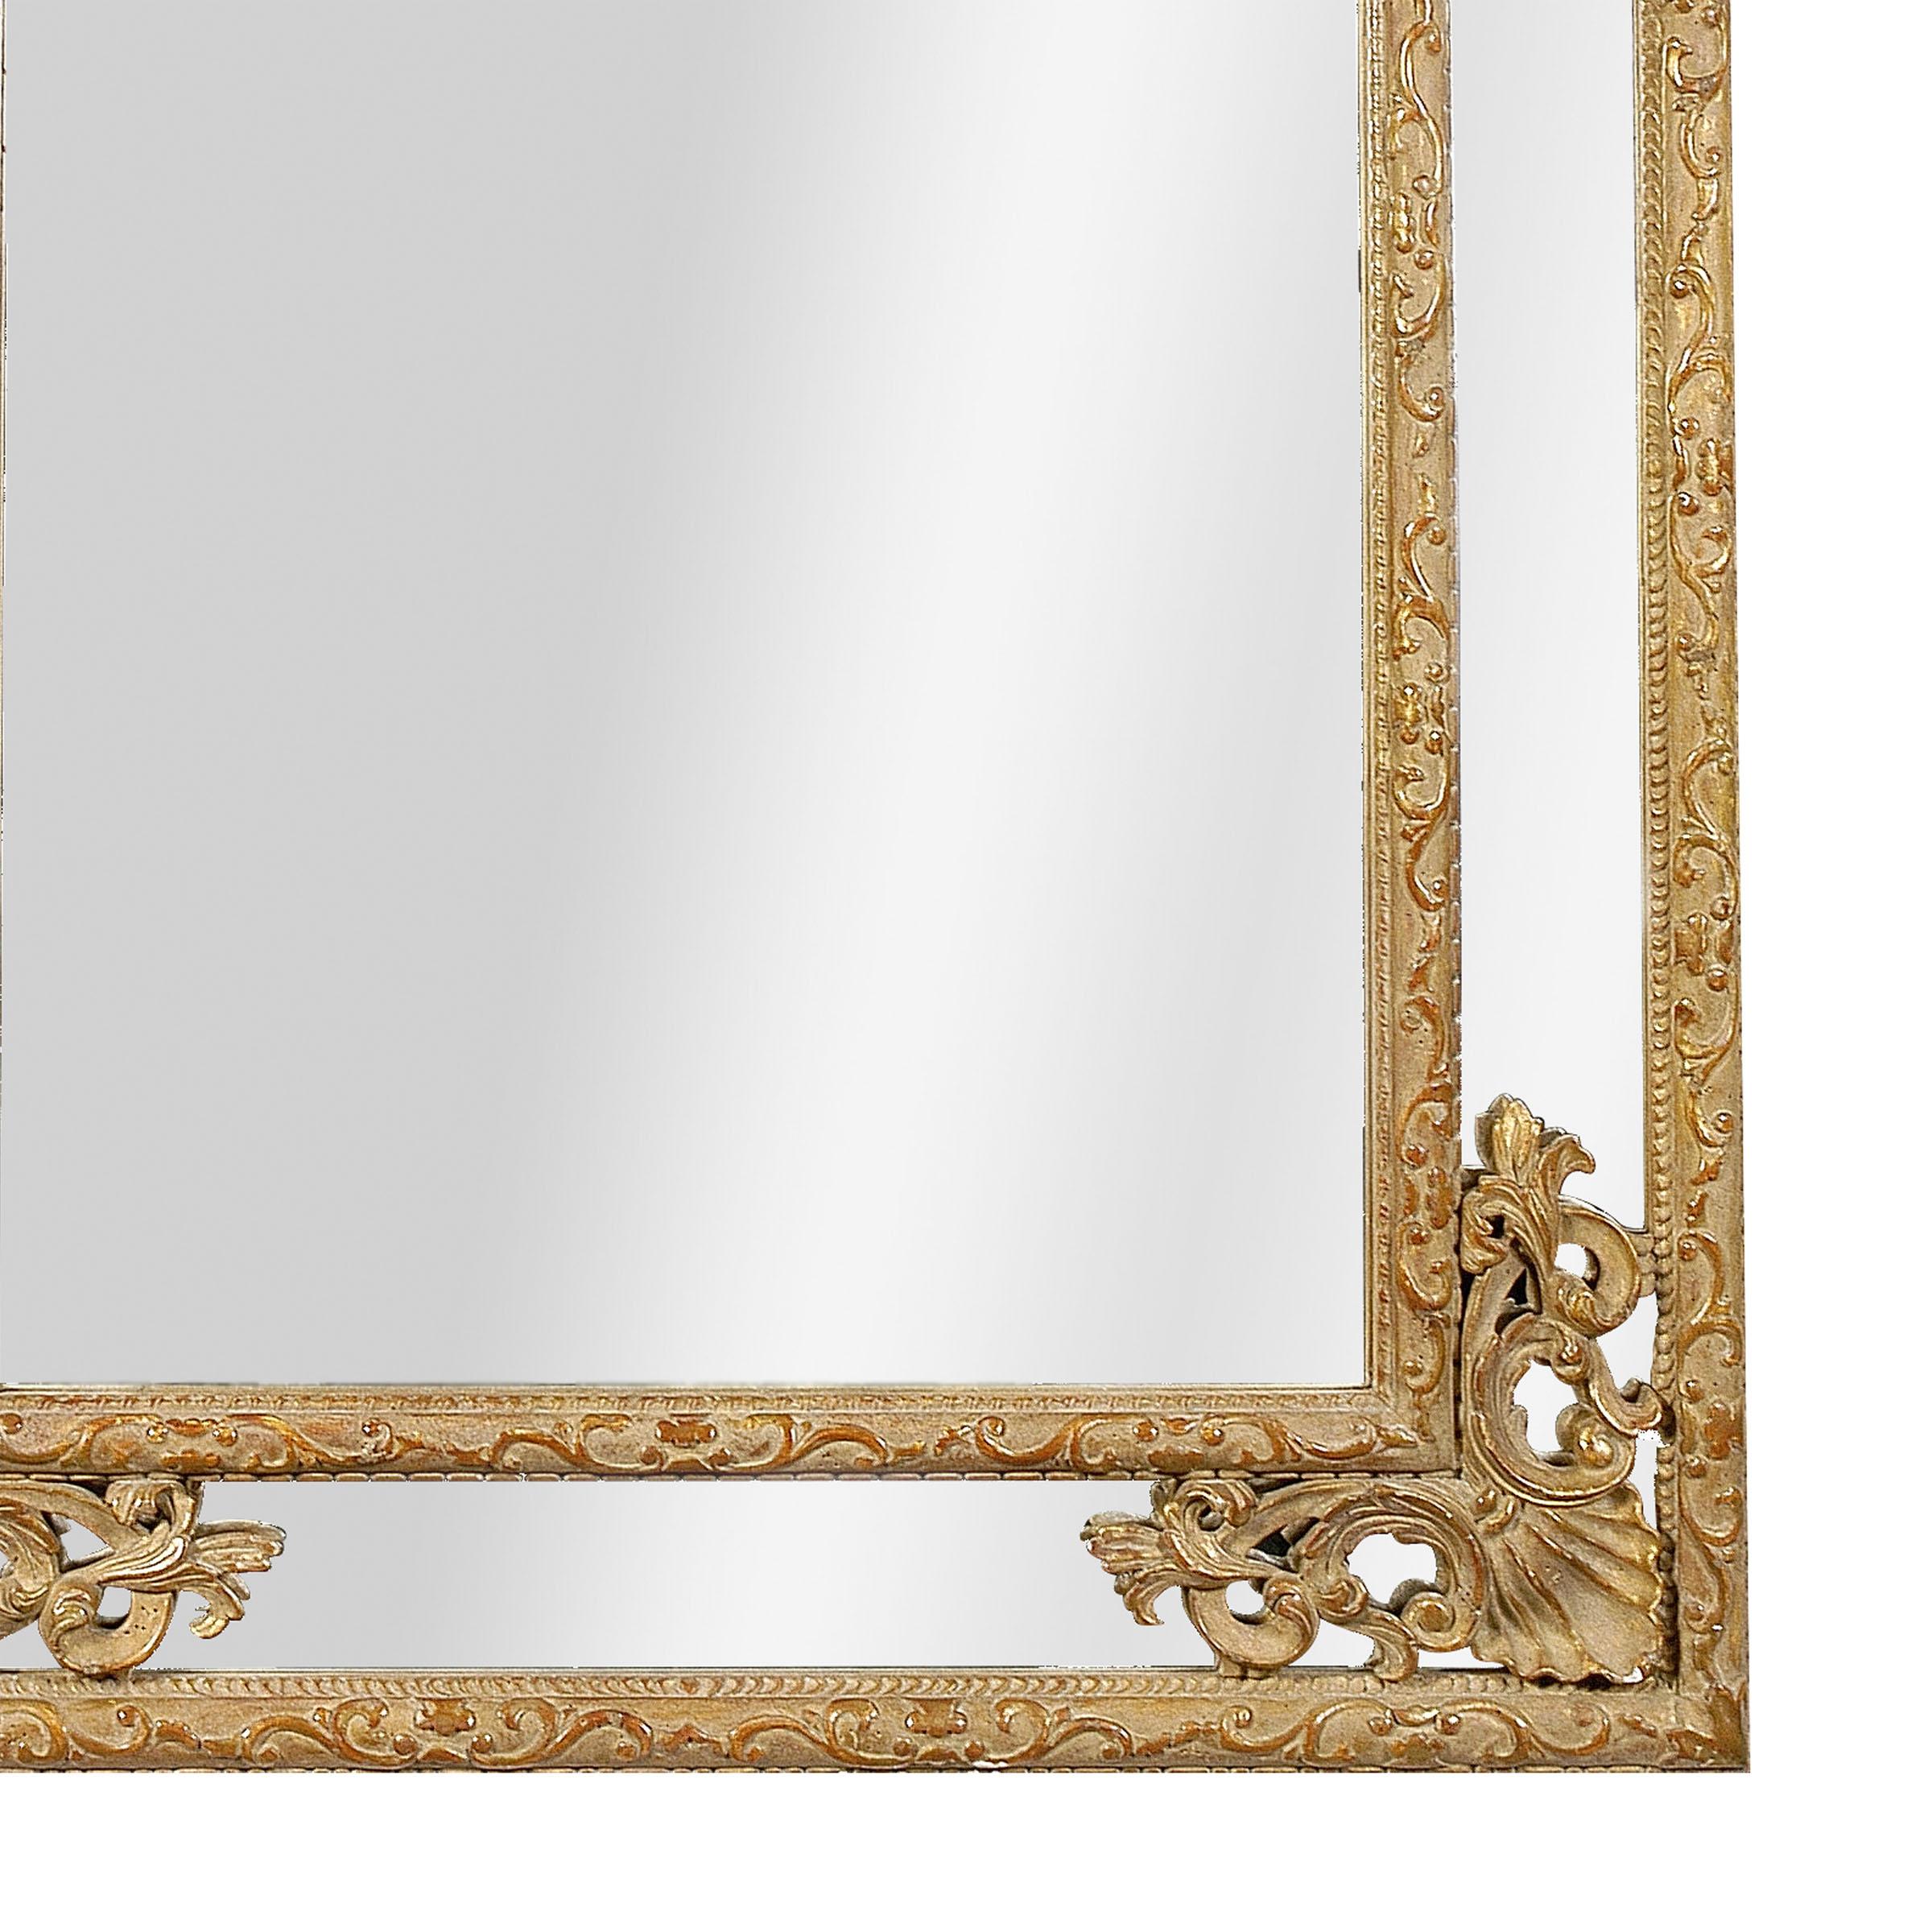 Neoklassizistischer rechteckiger handgefertigter Spiegel. Rechteckige, handgeschnitzte Holzstruktur mit Goldfolie überzogen, Spanien, 1970.